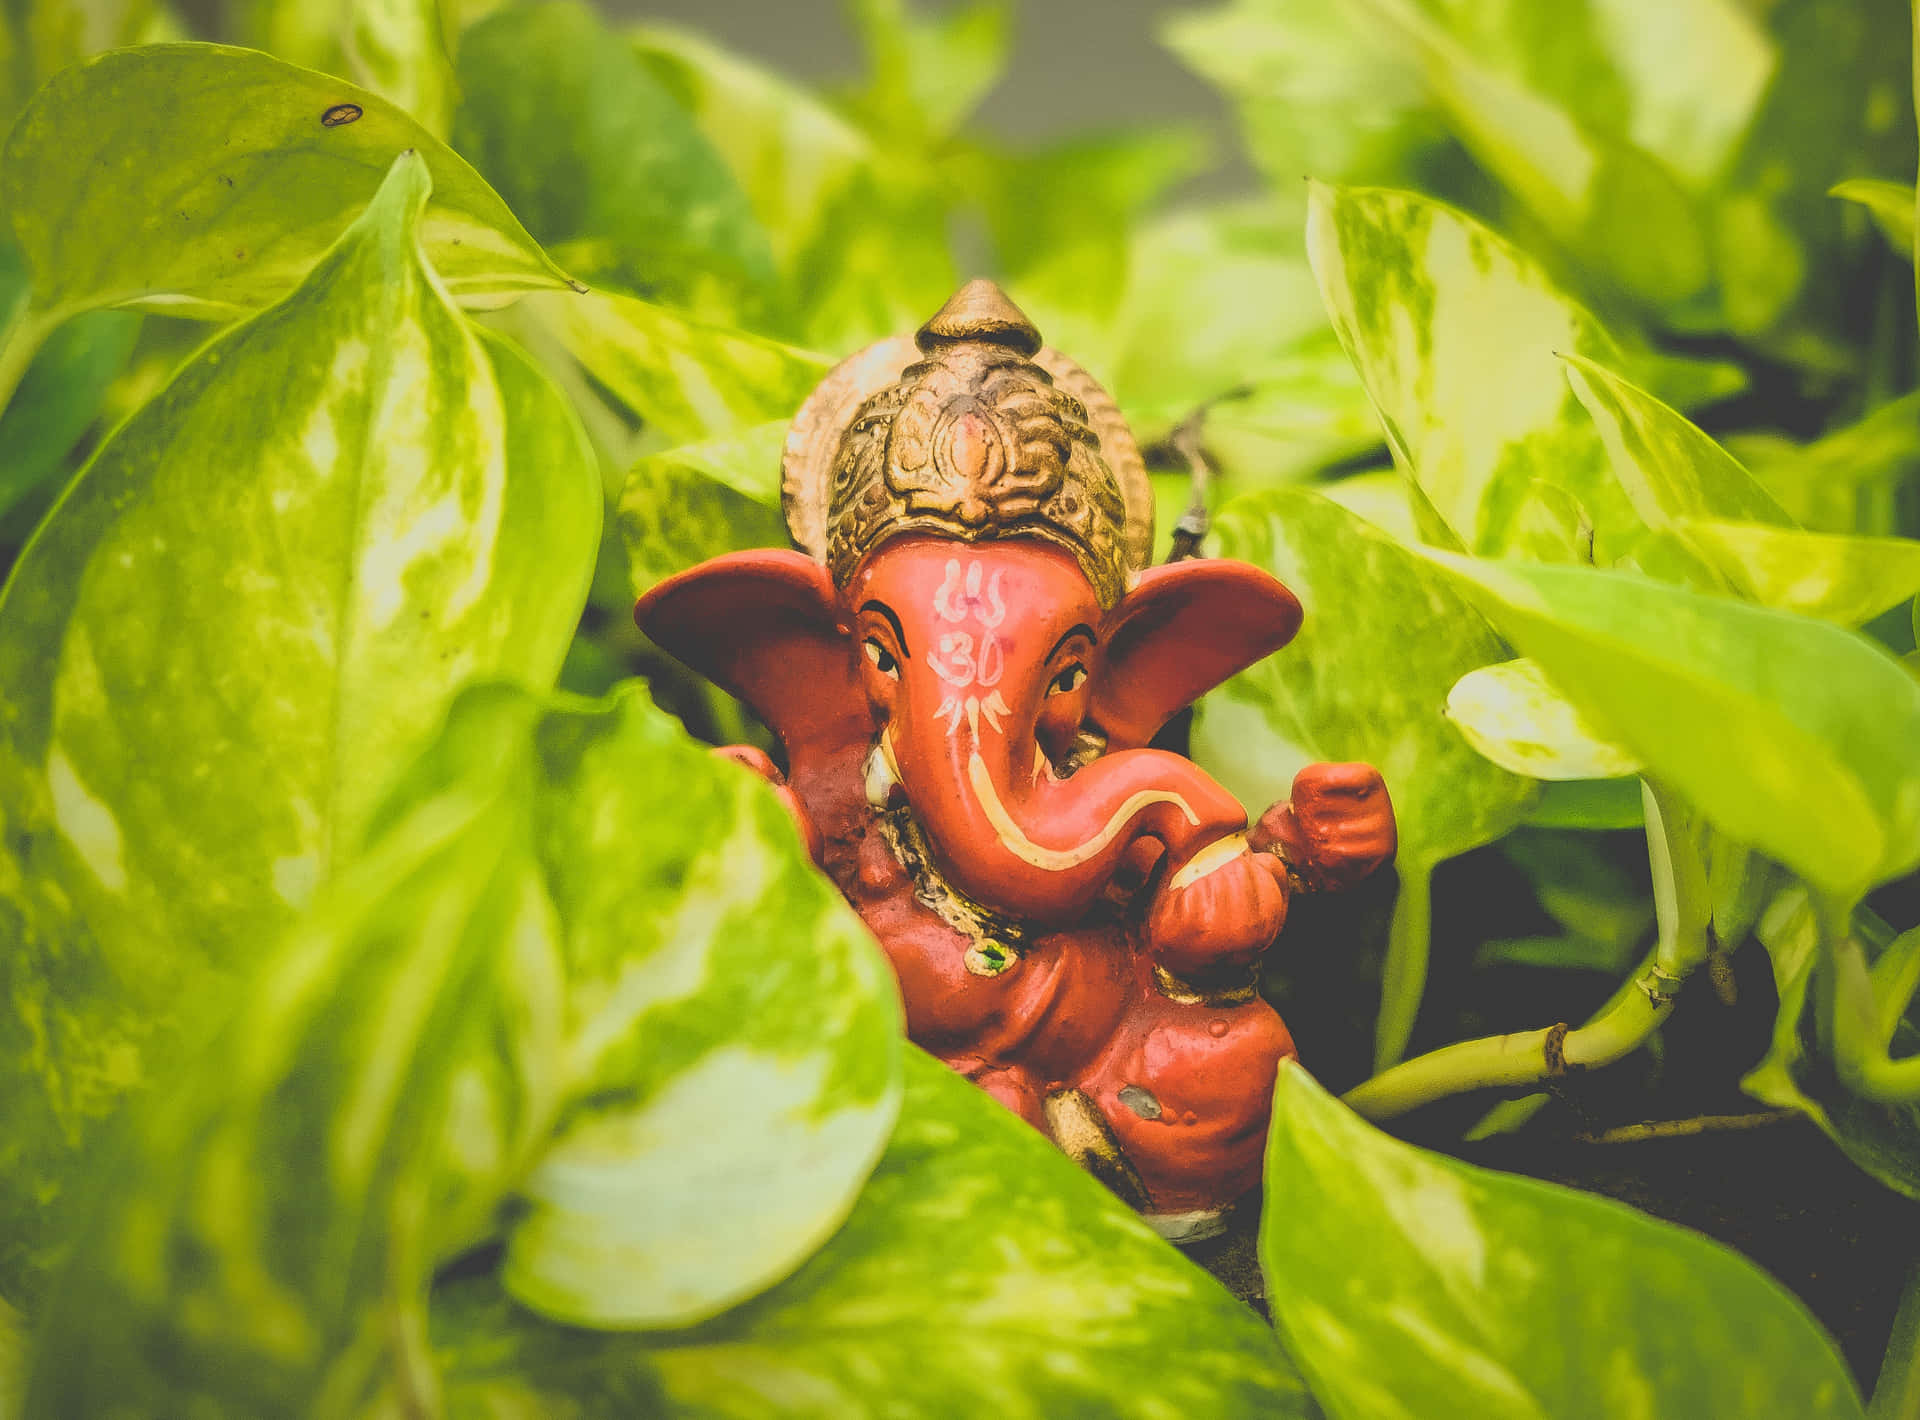 Enliten Staty Av Ganesha Som Sitter I En Grön Växt.